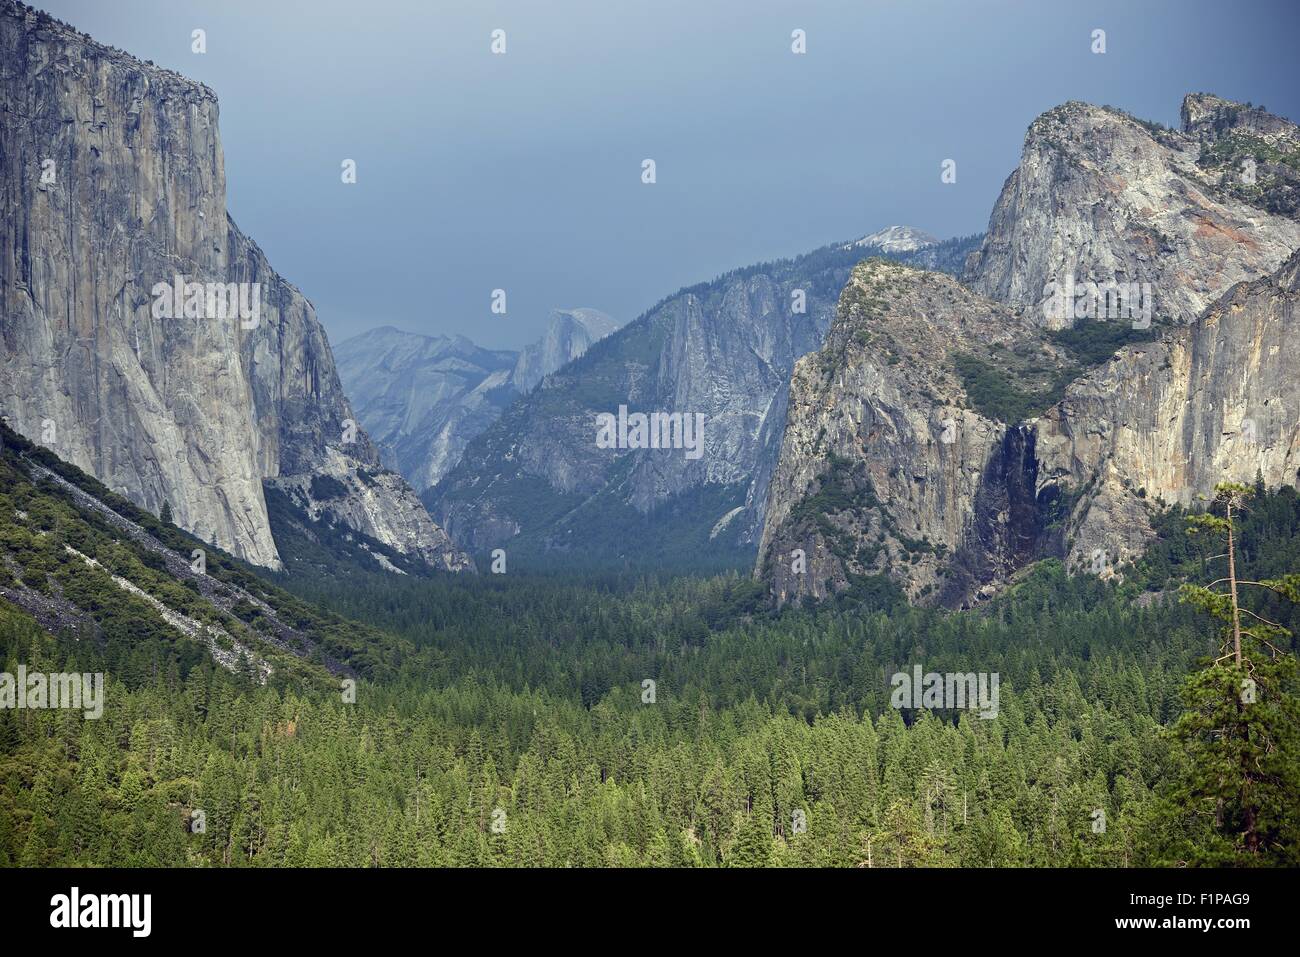 Il parco nazionale di Yosemite Valley, California, USA. Parco Nazionale di Yosemite / High Sierra - Panorama della valle. Natura raccolta di fotografie. Foto Stock